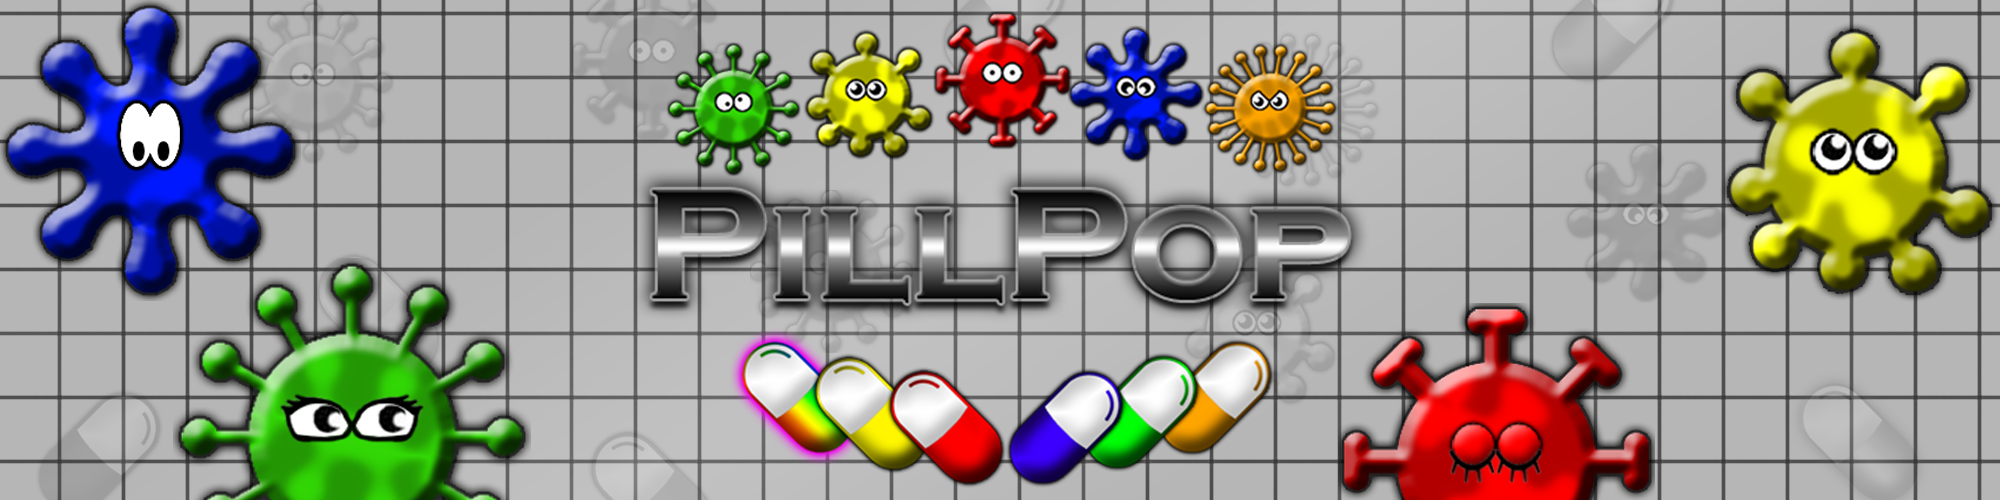 PillPop - Match 3 Pop Game